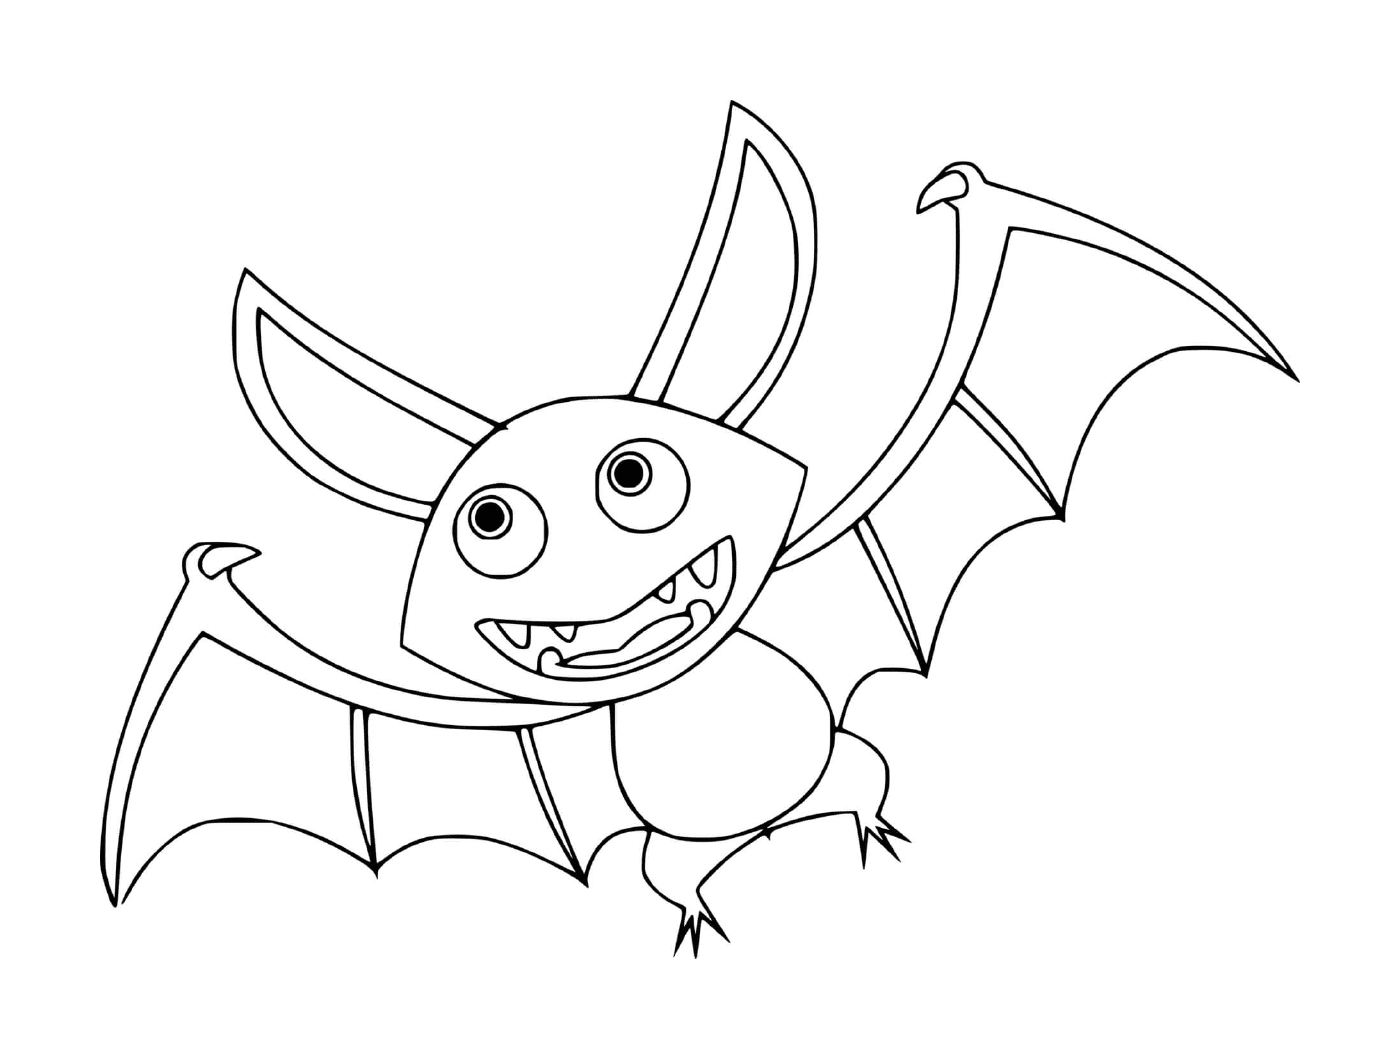  Pipistrello selvaggio in versione cartone animato 